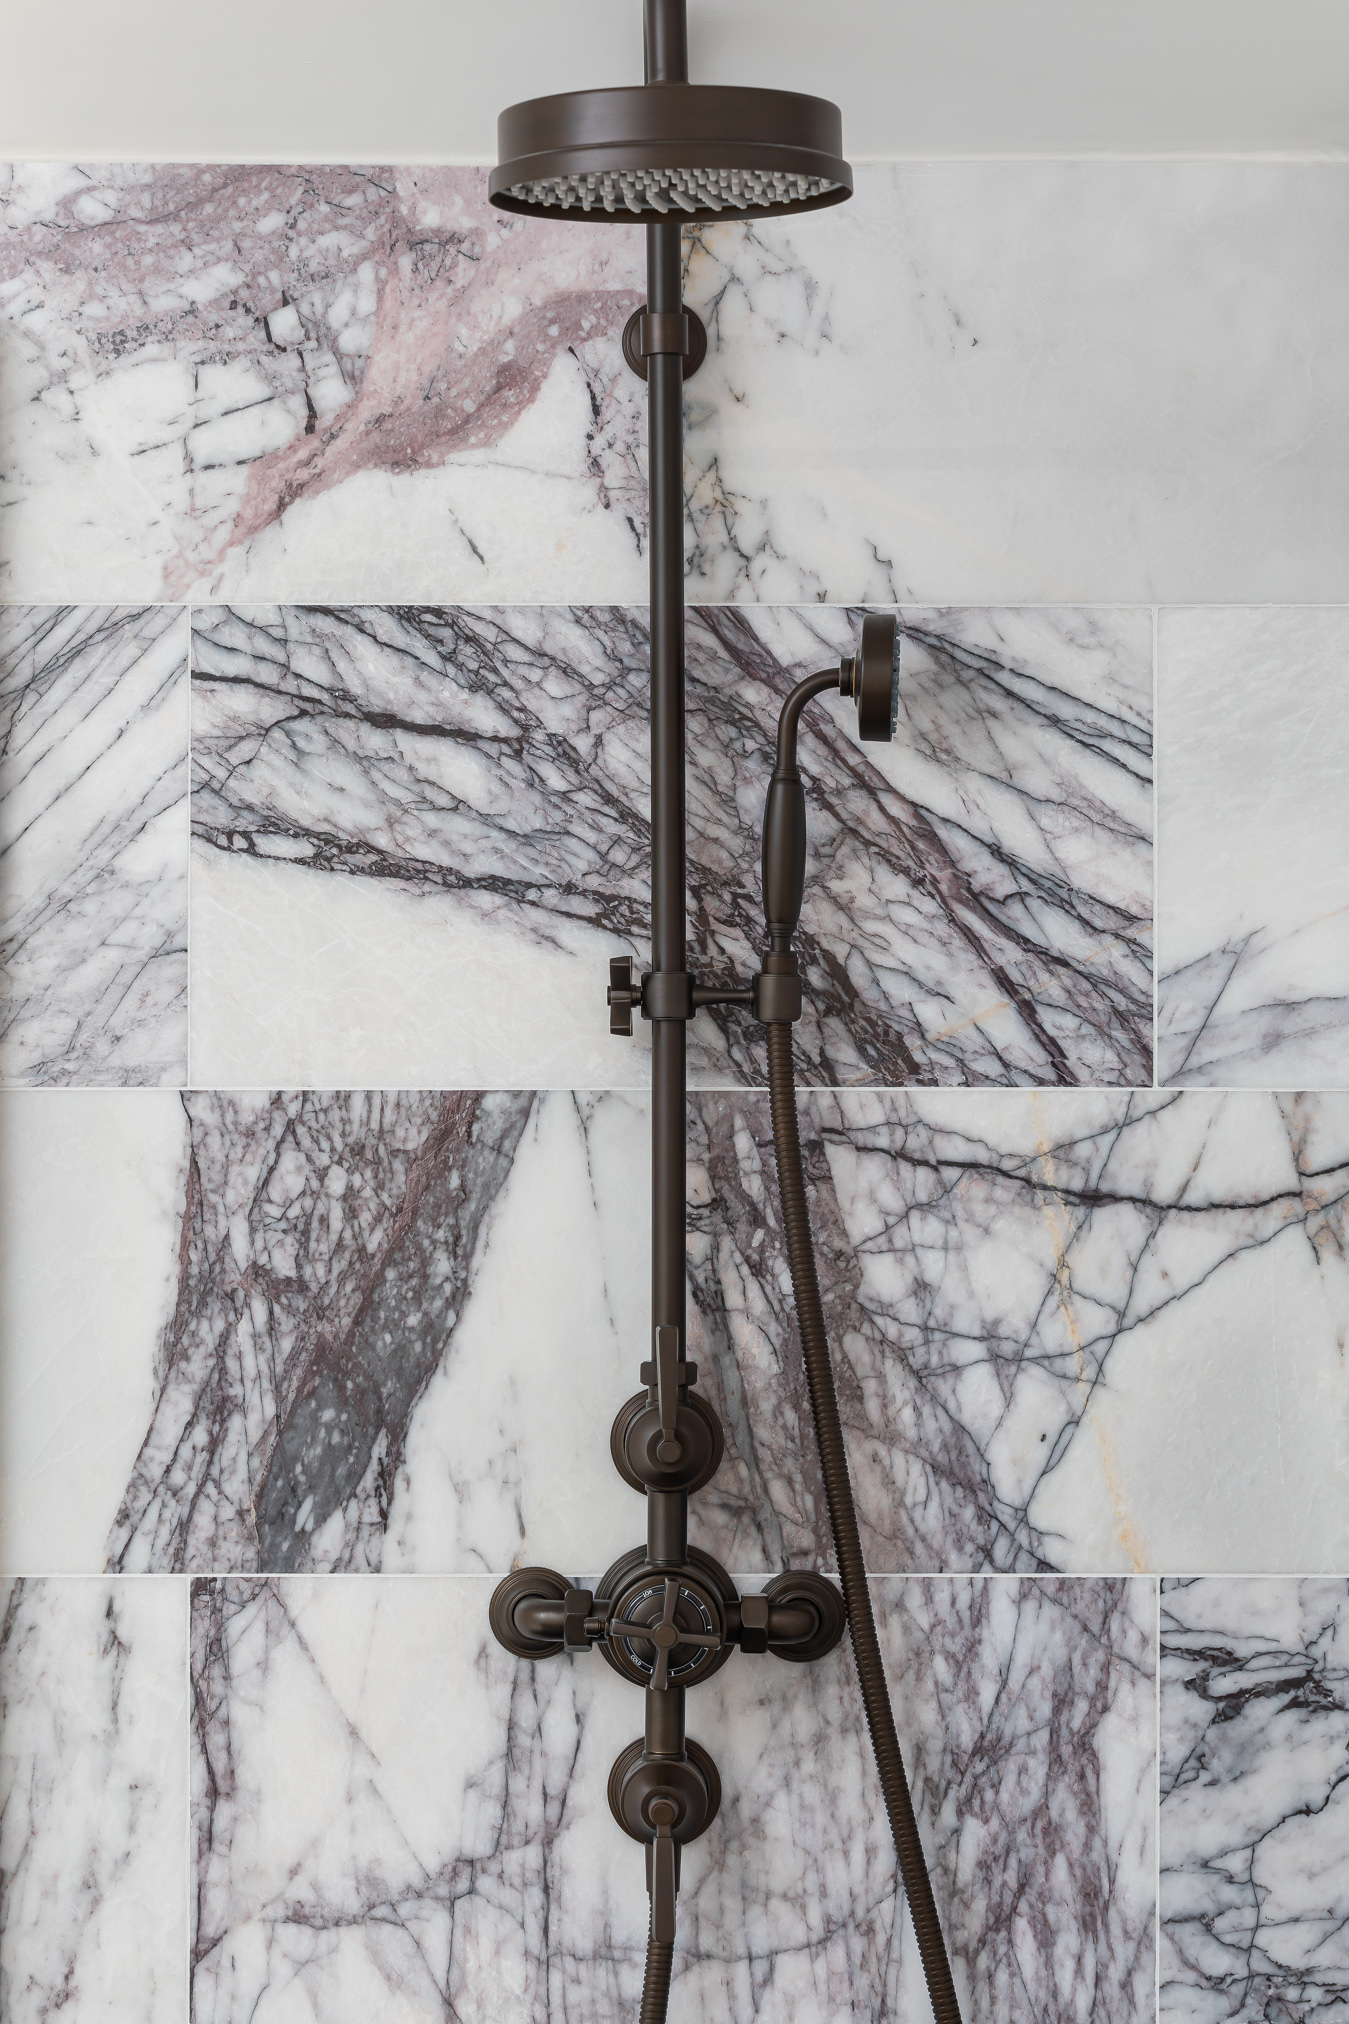 violette veined marble bronze Samuel heath brassier exposed shower